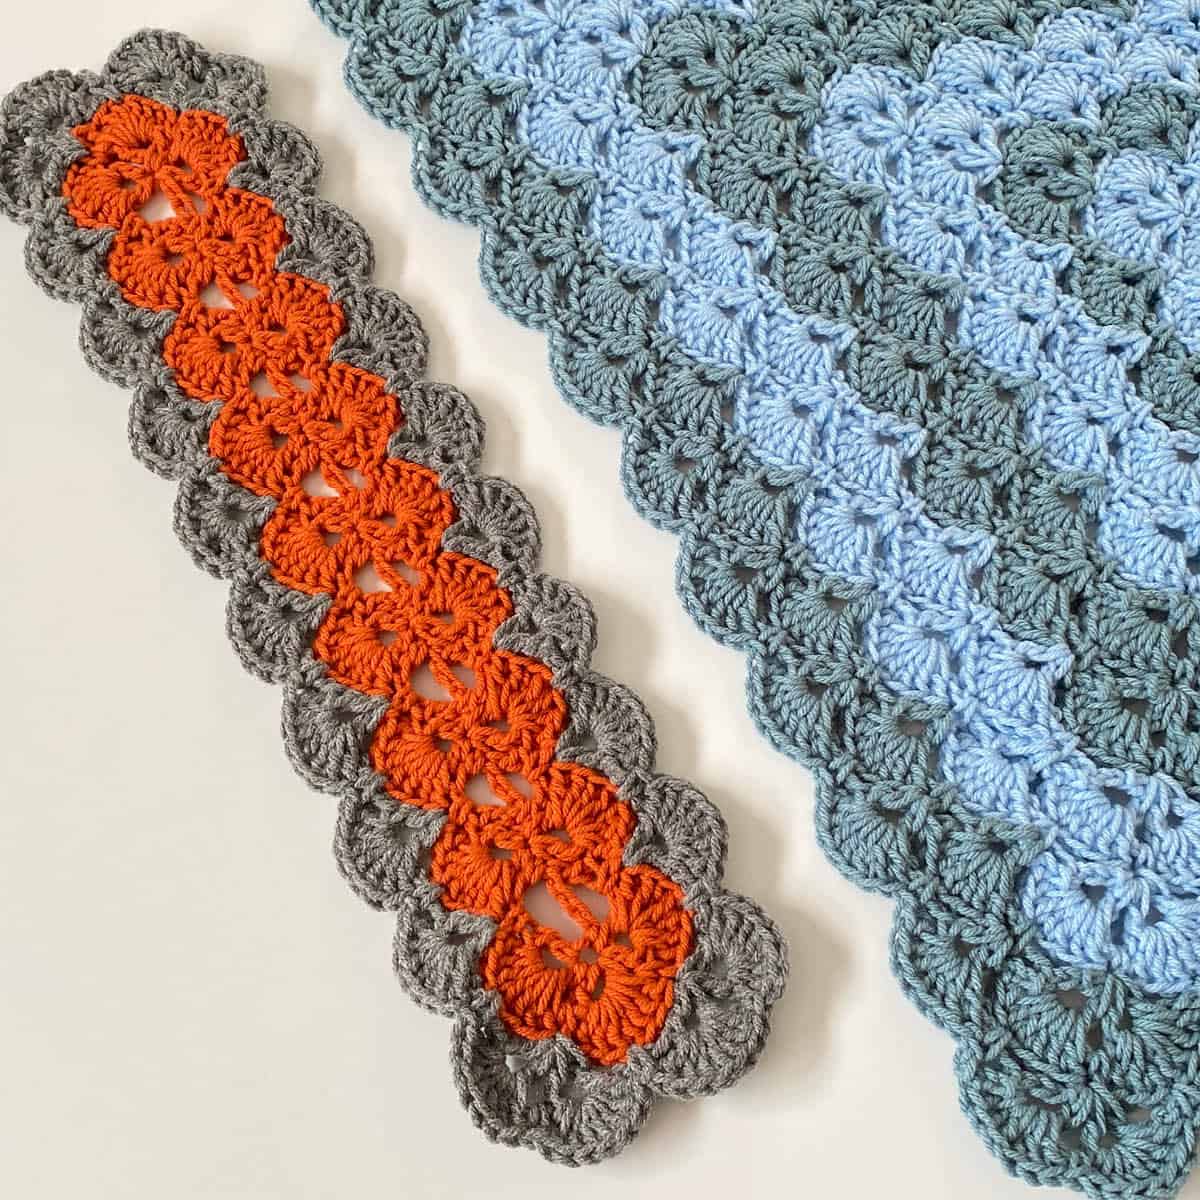 Crochet Multiple Sizes of Interlocking Shells Blanket